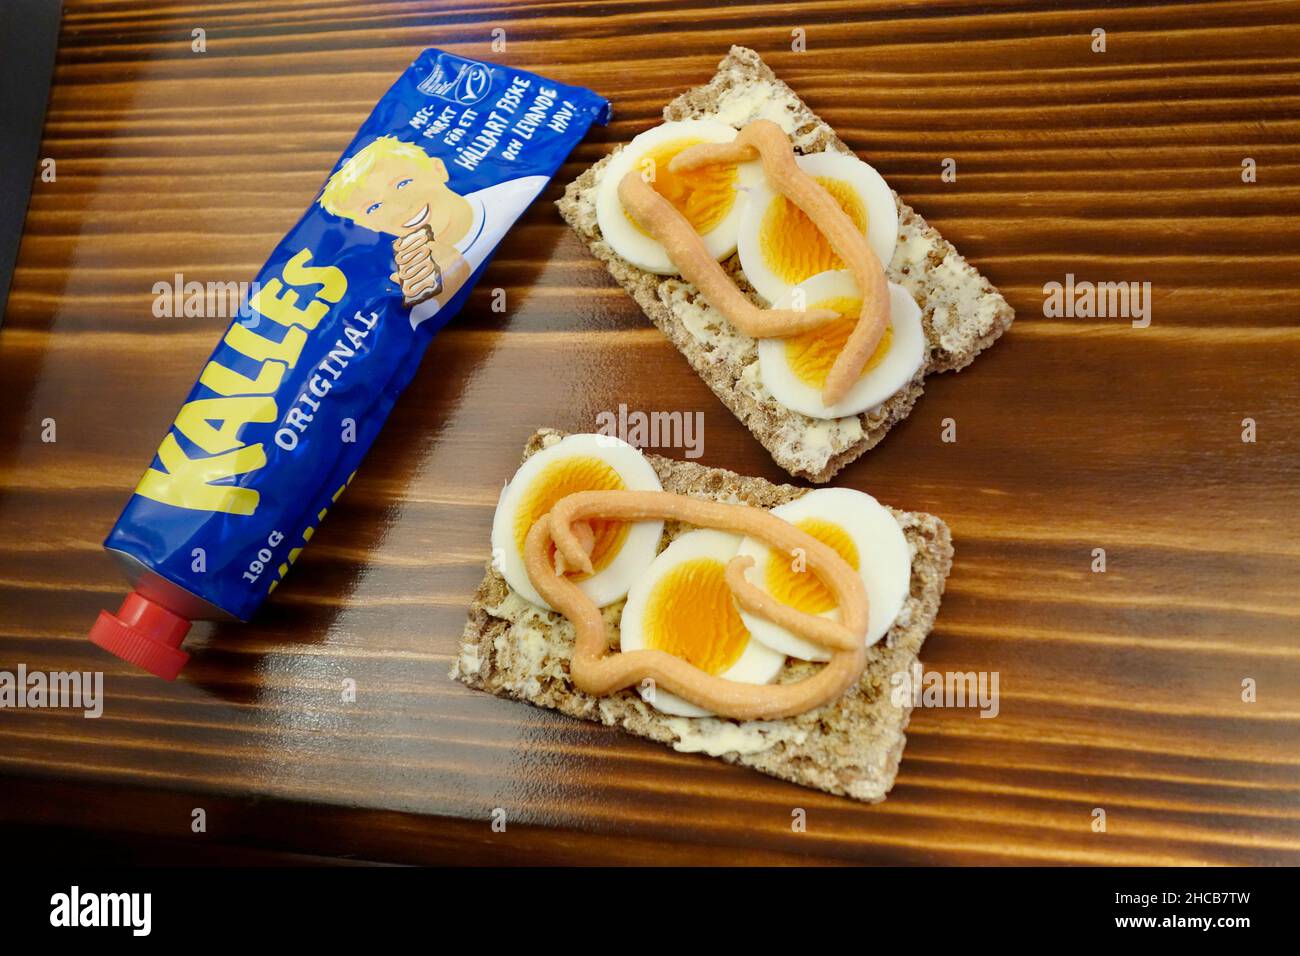 Schwedisches Sandwich (Smörgåss) mit Eierscheiben und Kalles Kaviar auf dem knusprigen Brot (knäckebröd). Auf dem verbrannten Holzhintergrund. Stockfoto